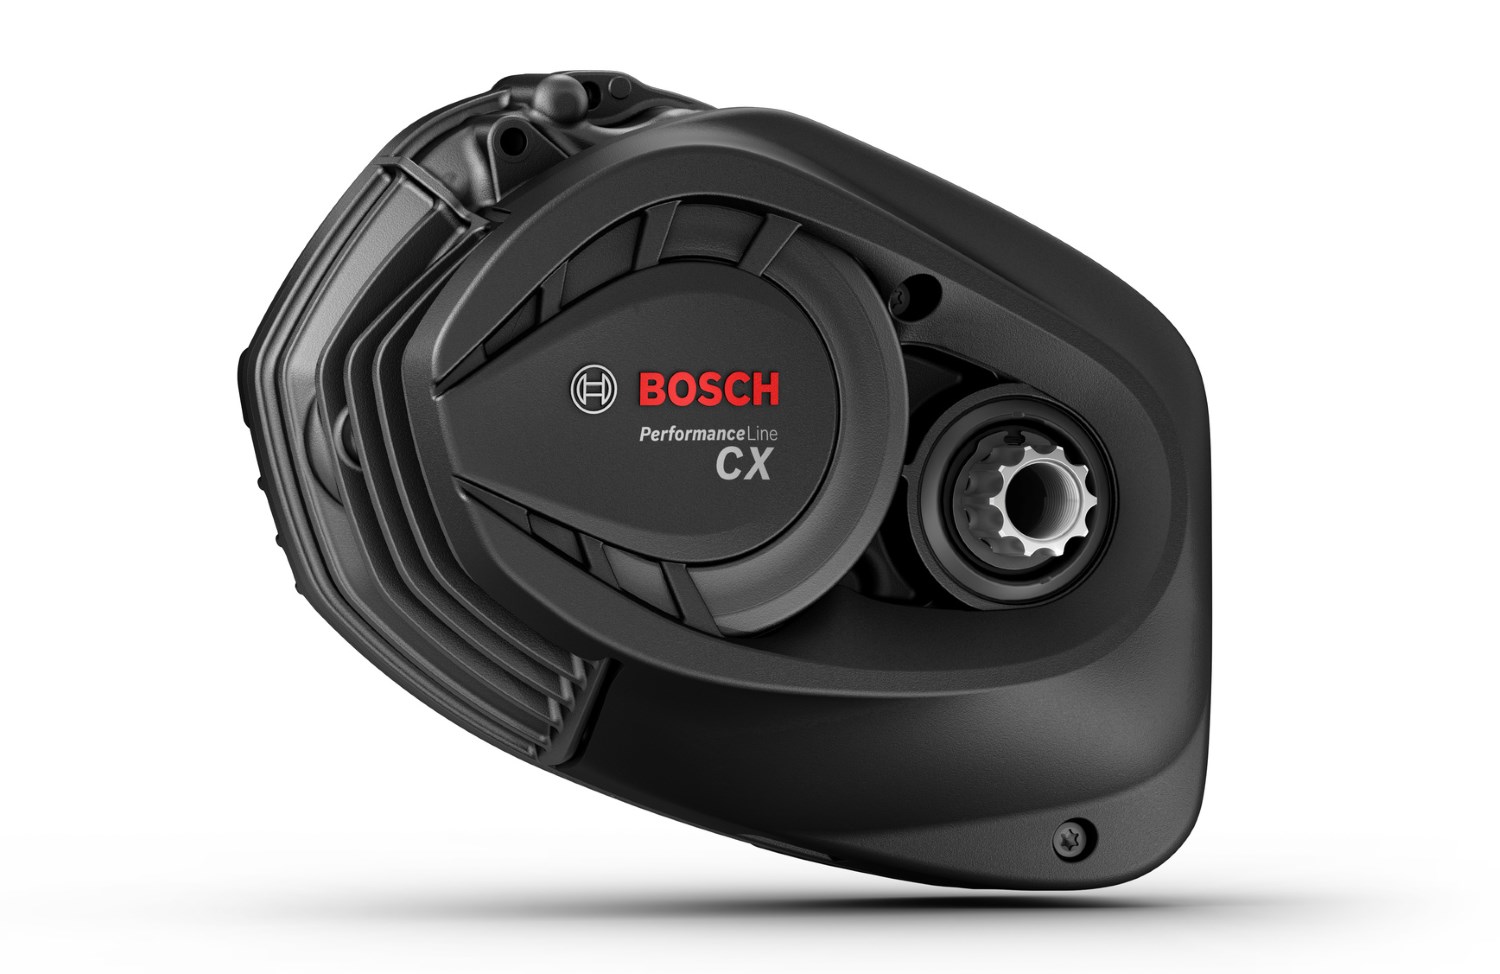 Die technischen Daten des Bosch Performance Line CX